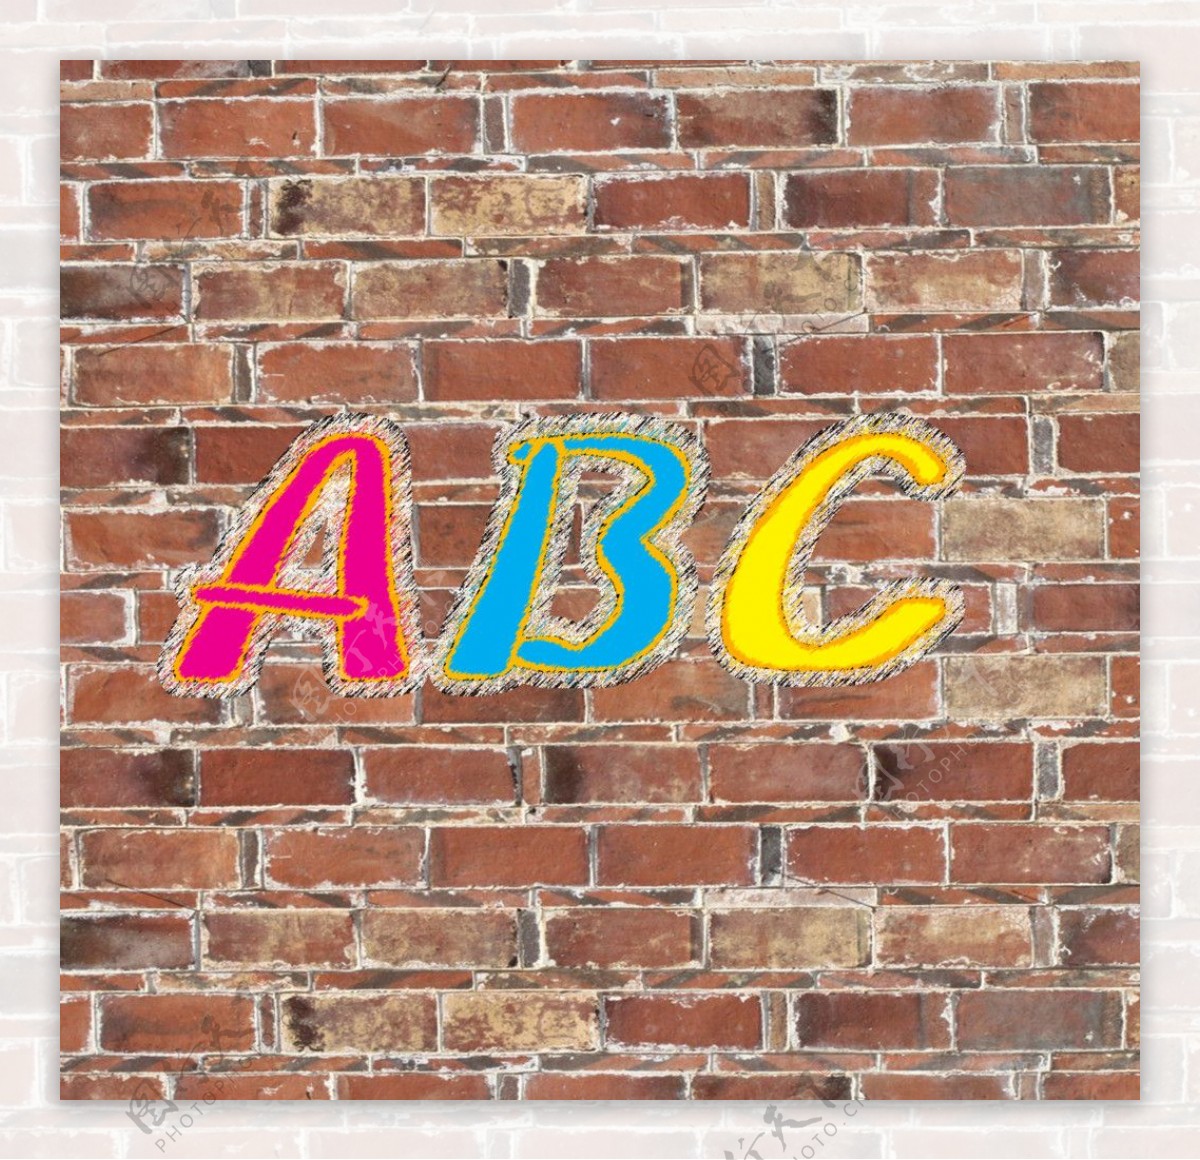 ABC墙面字体图片